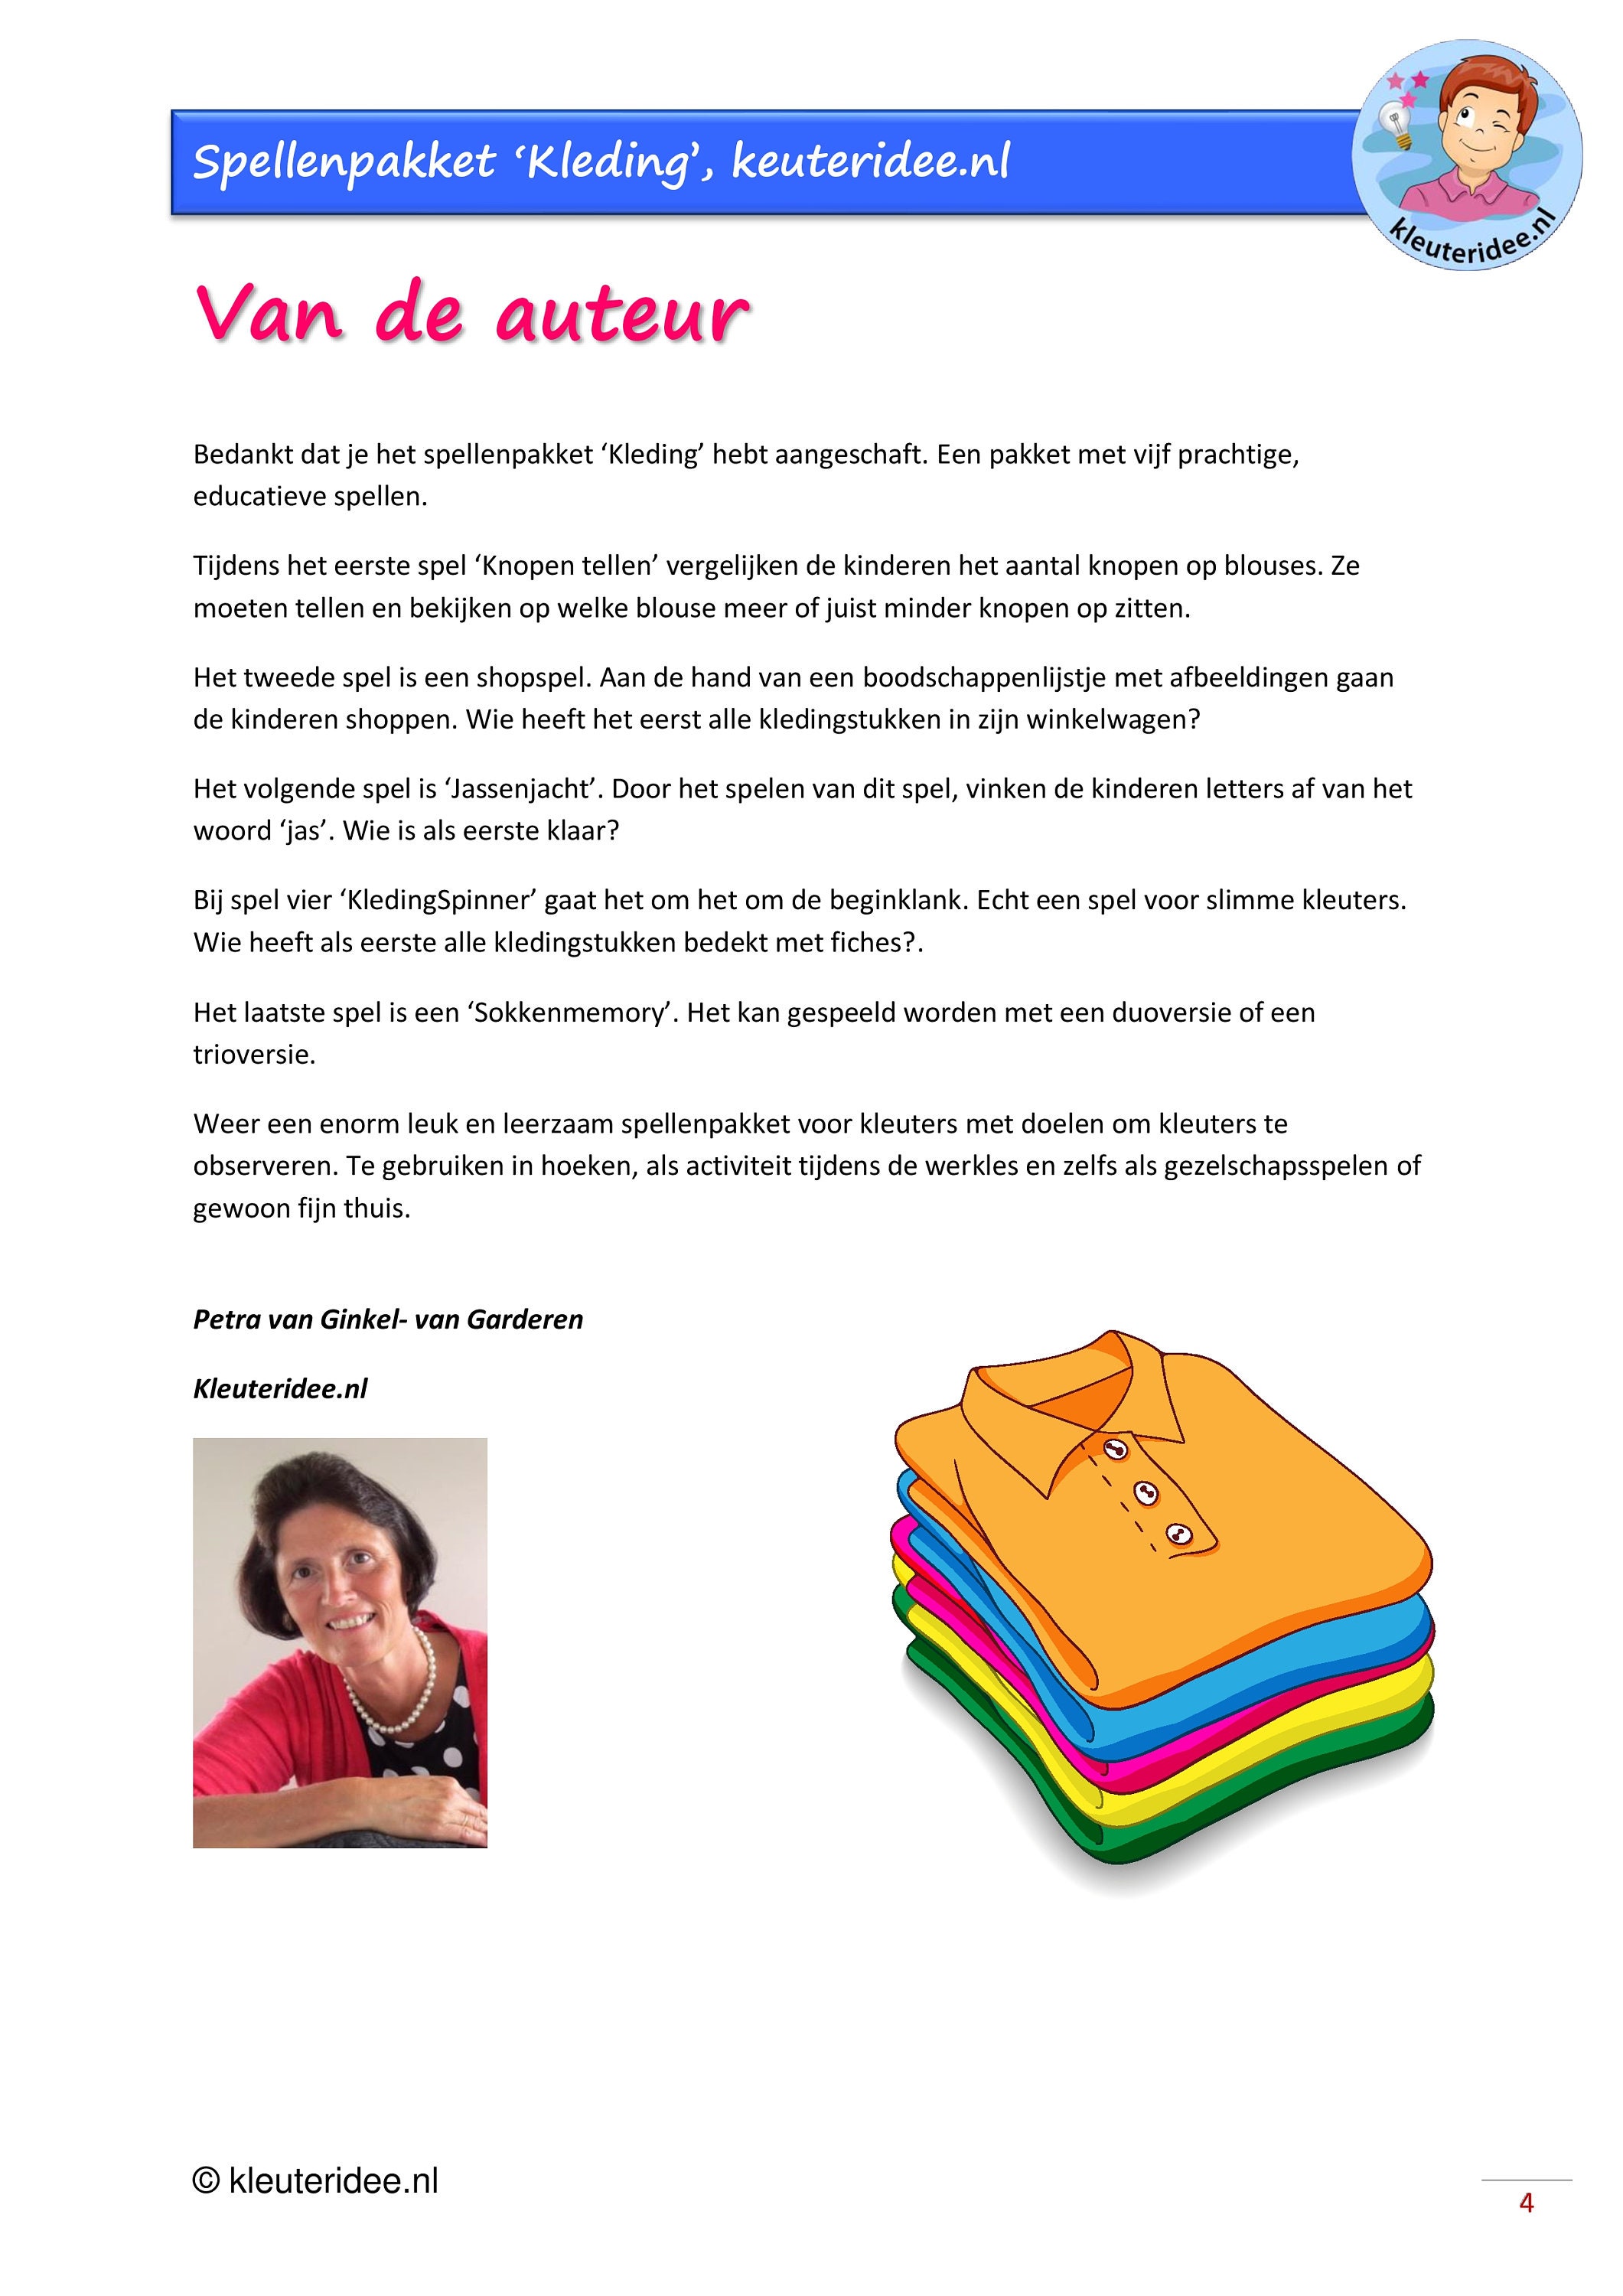 Spellenpakket kleding - Etsy Nederland